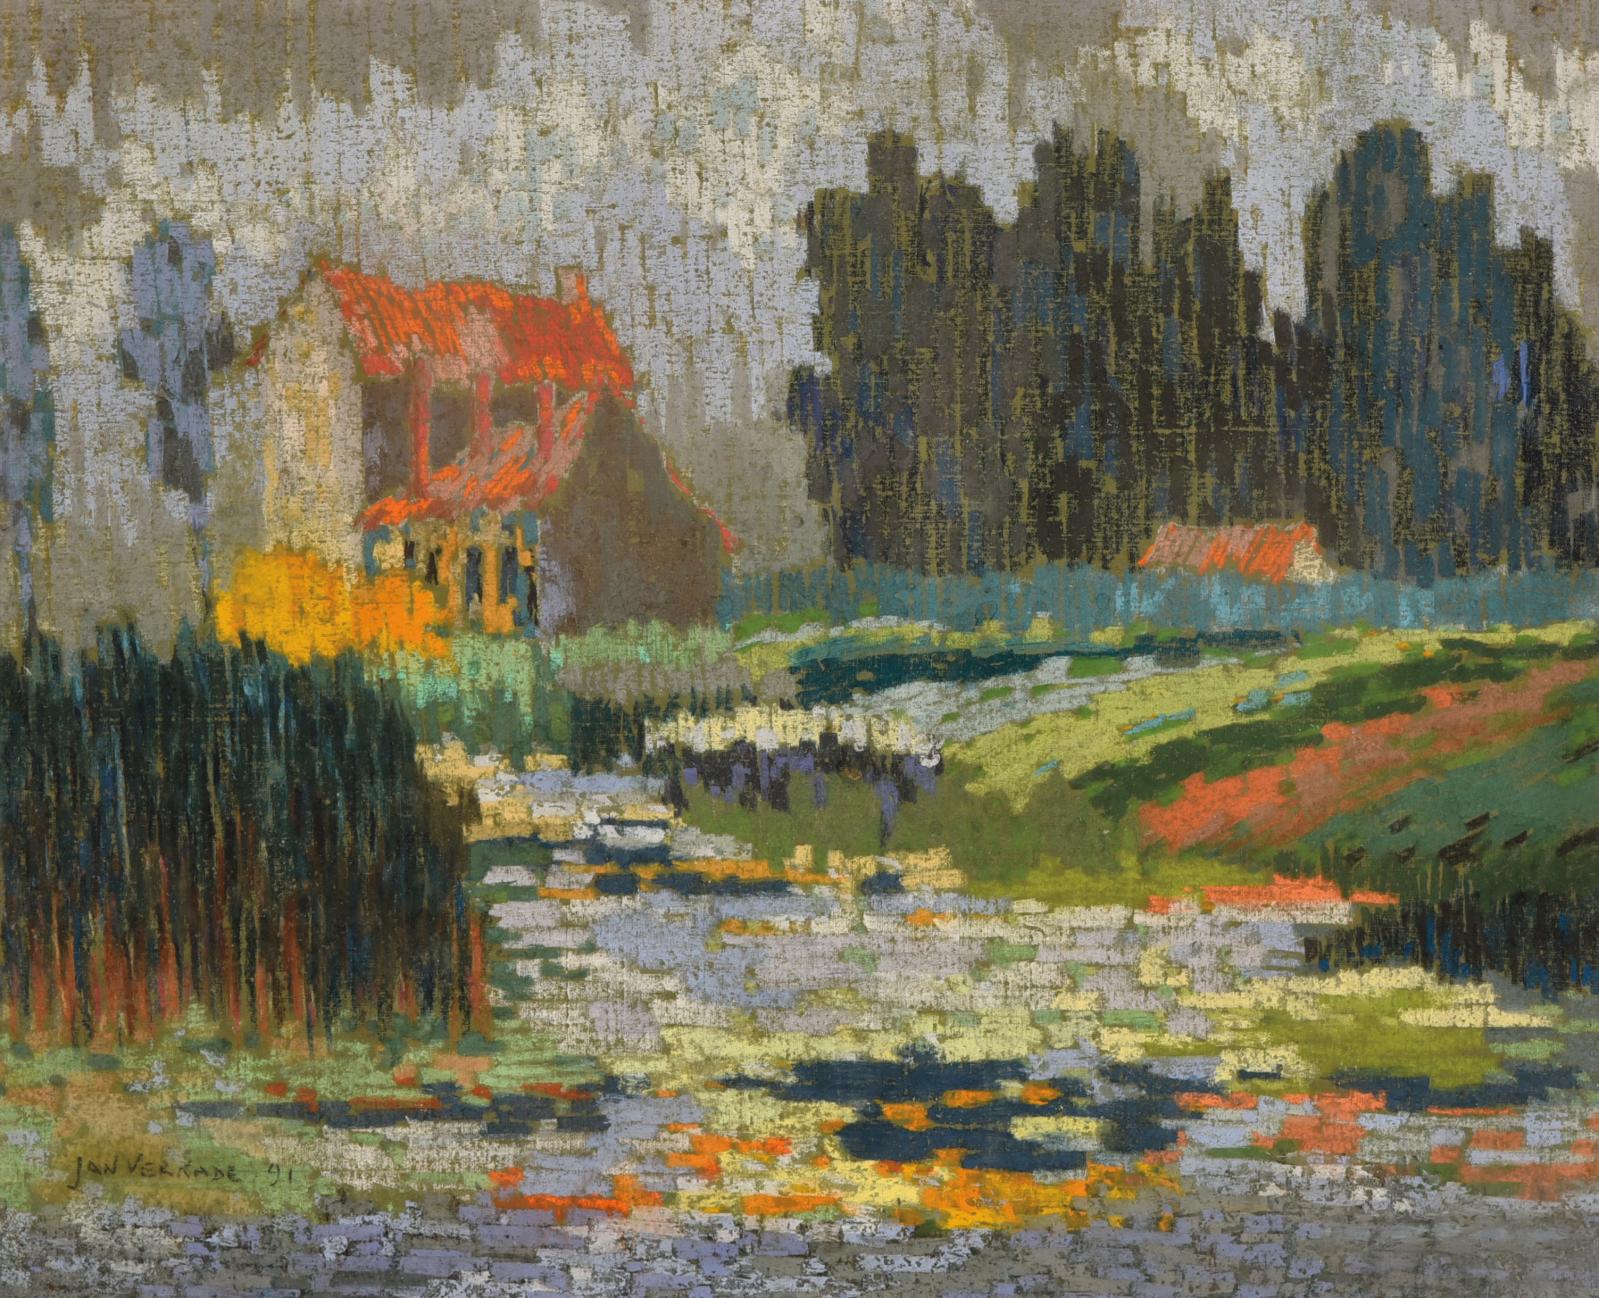 Jan Verkade (1868-1946) interrompt en 1889 ses études à l’Académie des beaux-arts d’Amsterdam, et s’installe à Hattem, un village près de Zwolle. Cet 